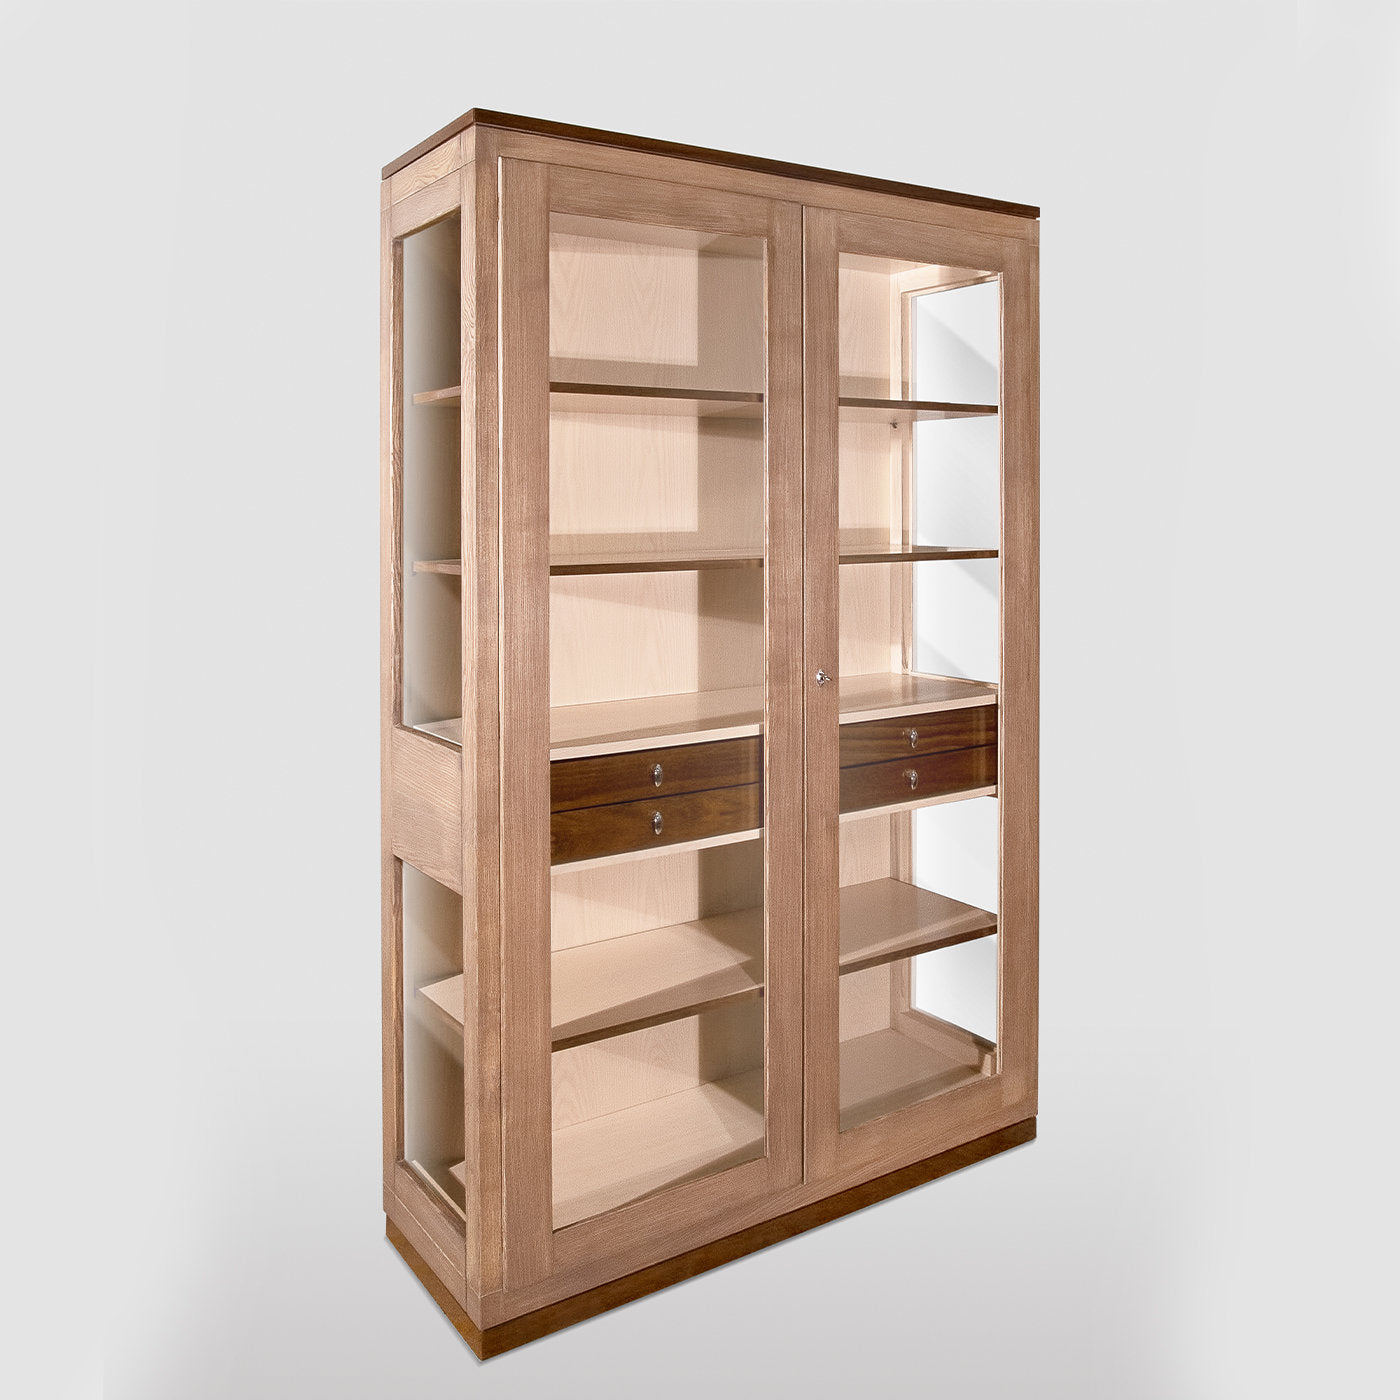 Lydie Display Cabinet by Erika Gambella - Alternative view 1